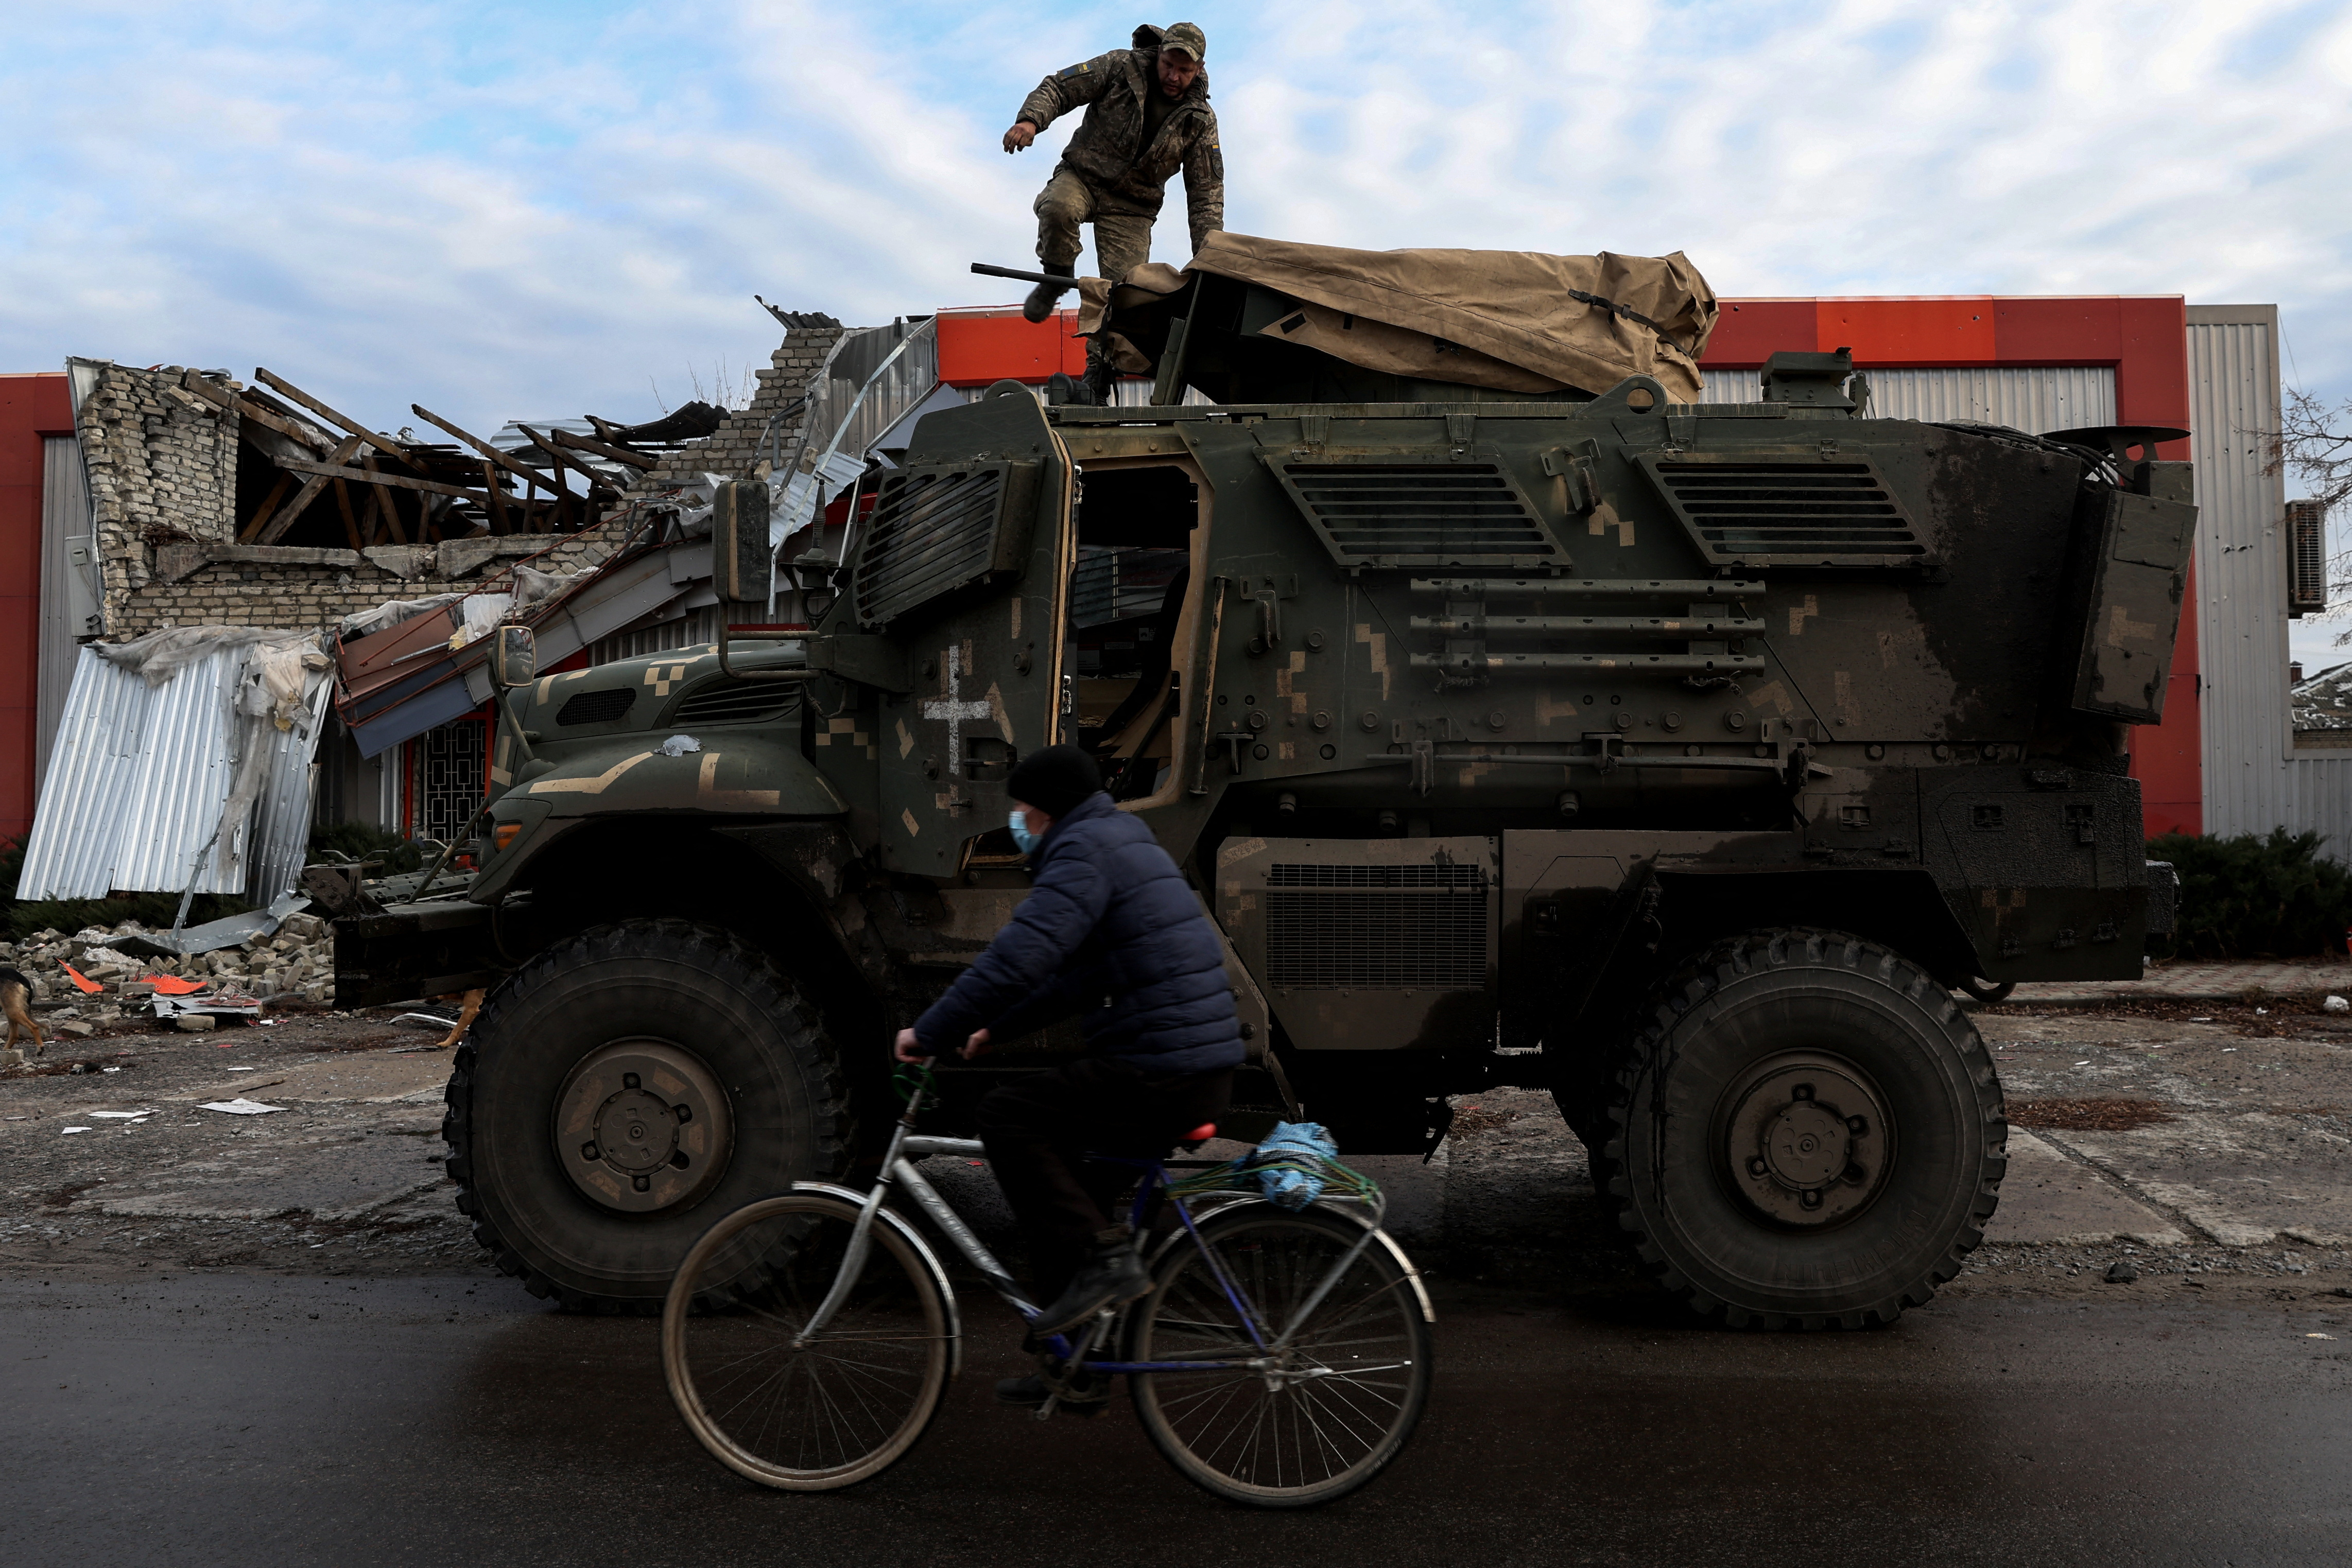 जैसा कि यूक्रेन पर रूस का आक्रमण जारी है, यूक्रेन के डोनेट्स्क क्षेत्र में पूर्व में रूस के कब्जे वाले शहर लाइमैन में एक बाइक सवार एक सुरक्षात्मक मास्क पहने एक व्यक्ति यूएस मैक्सप्रो सैन्य वाहन के ऊपर से एक सैनिक को पार करता है।